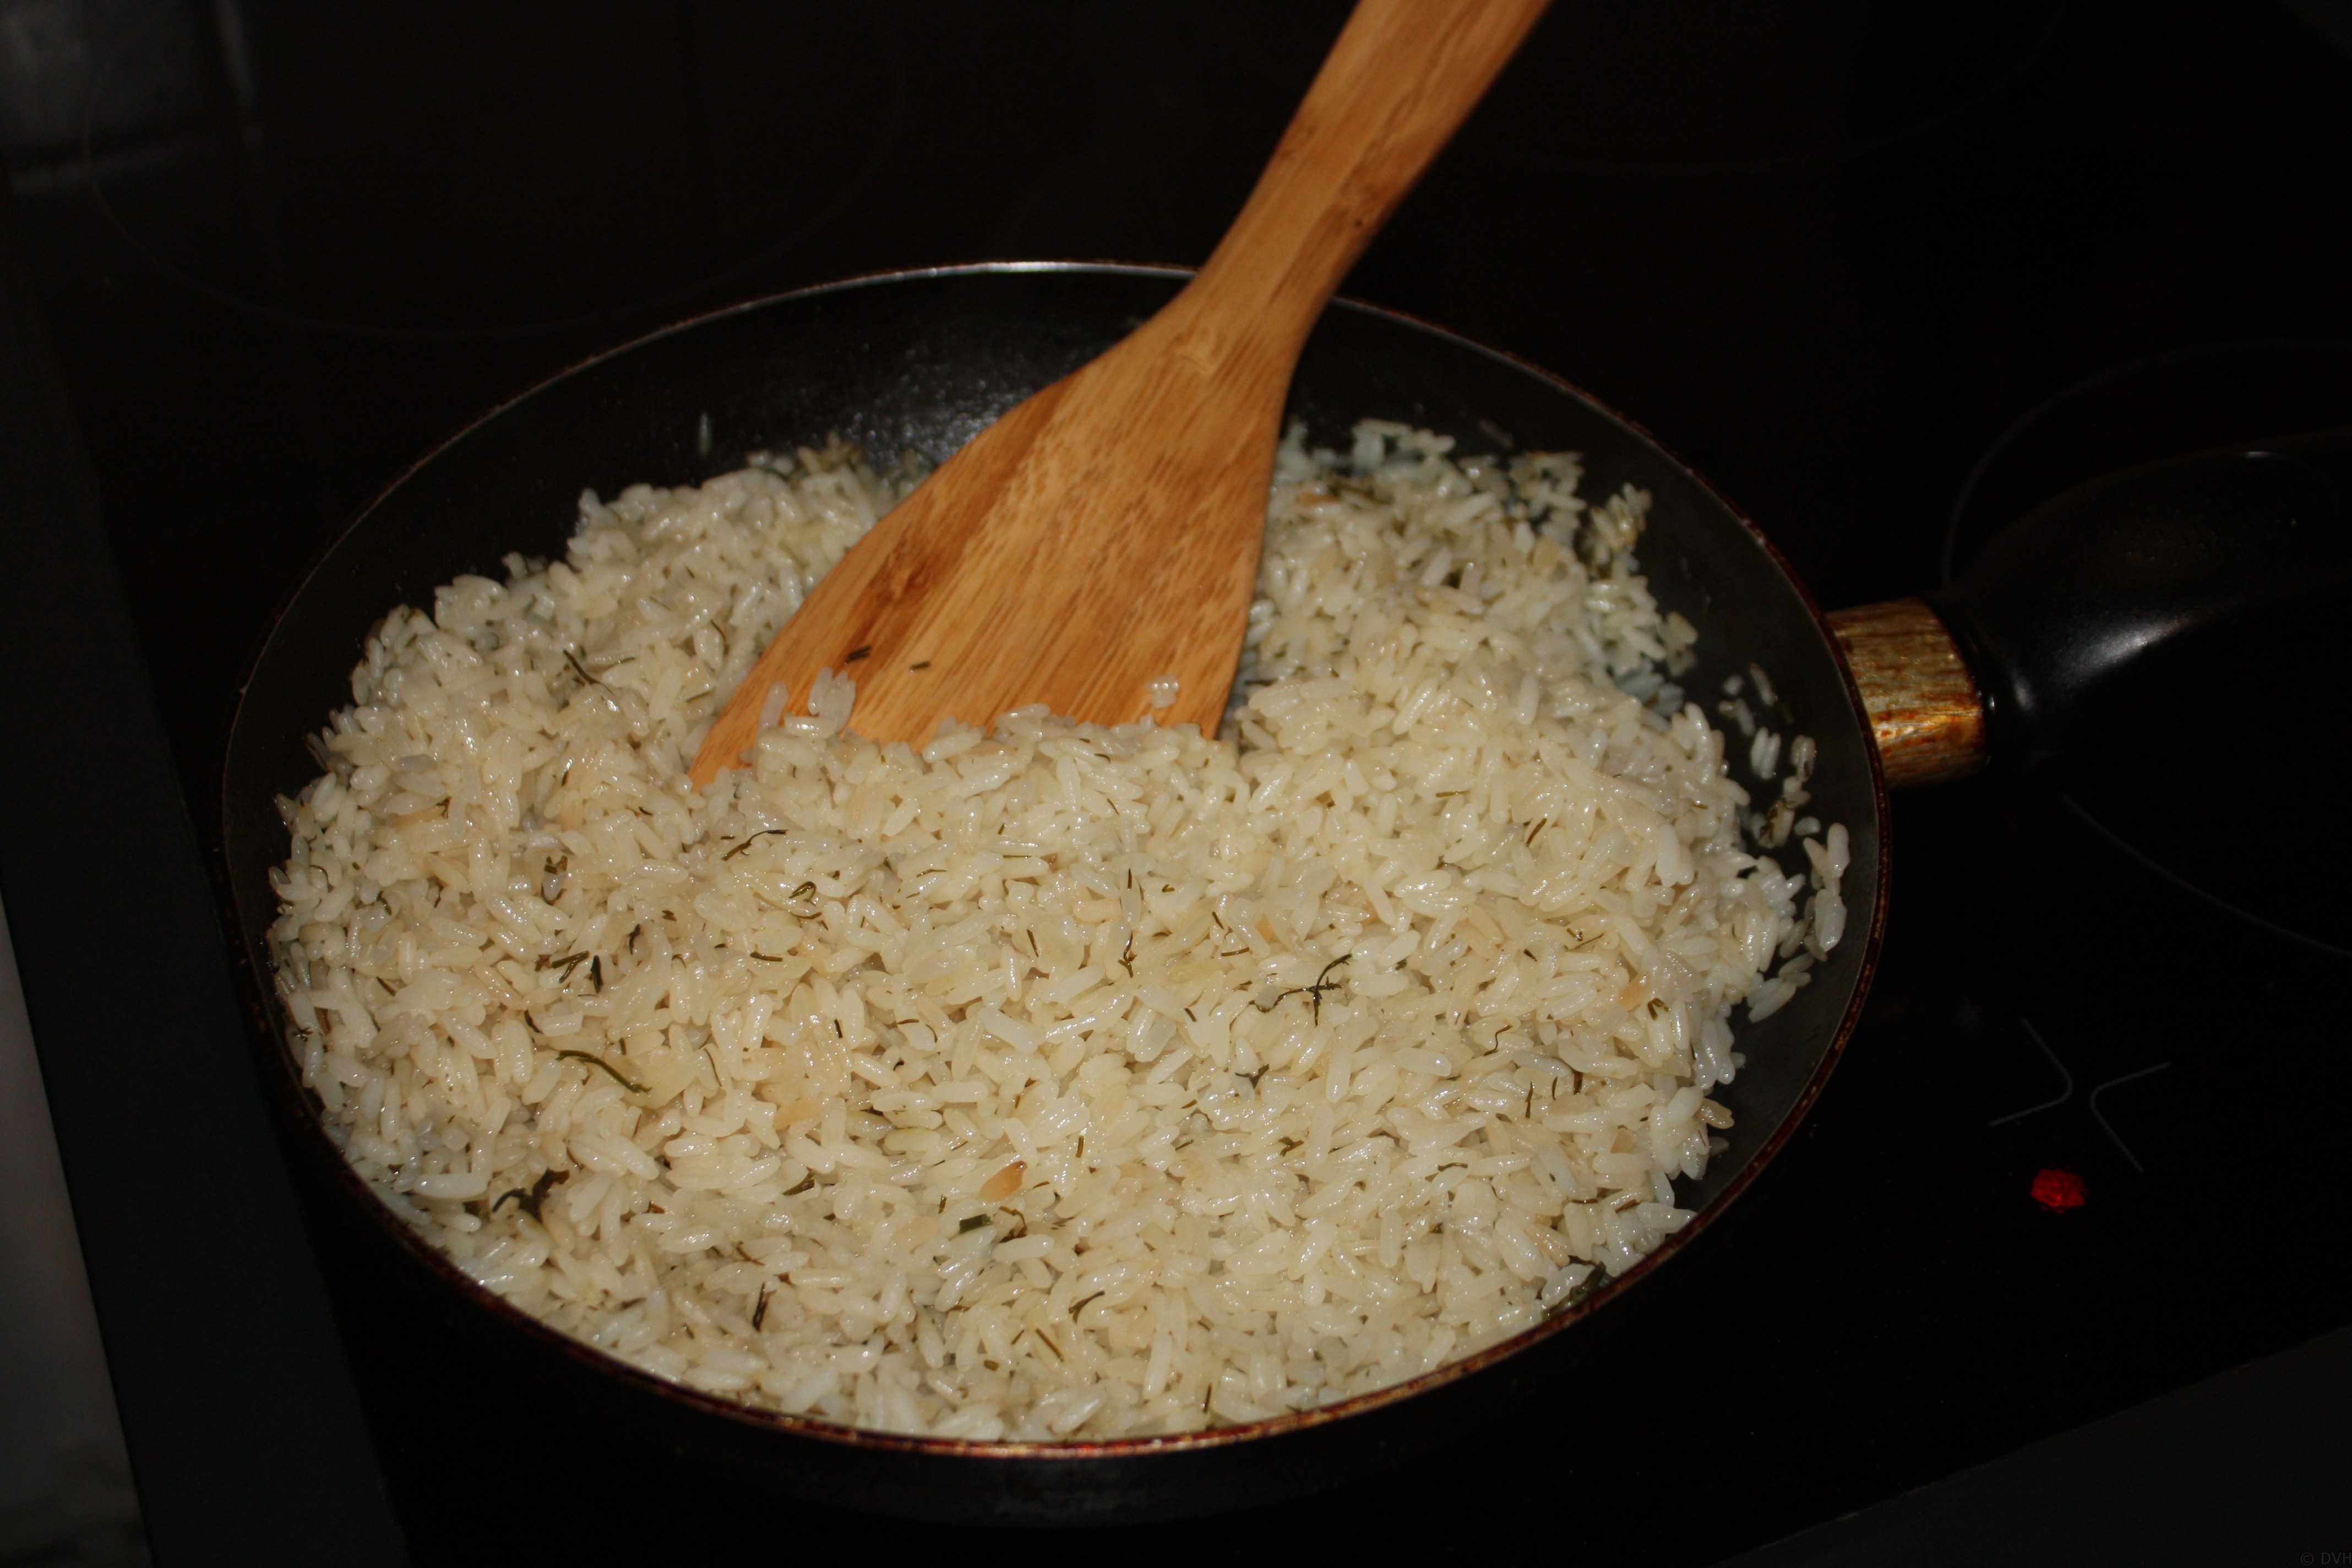 Сколько воды наливать в плов. Рис басмати вареный. Рис басмати приготовленный. Пропорции риса басмати и воды. Рис басмати для плова.